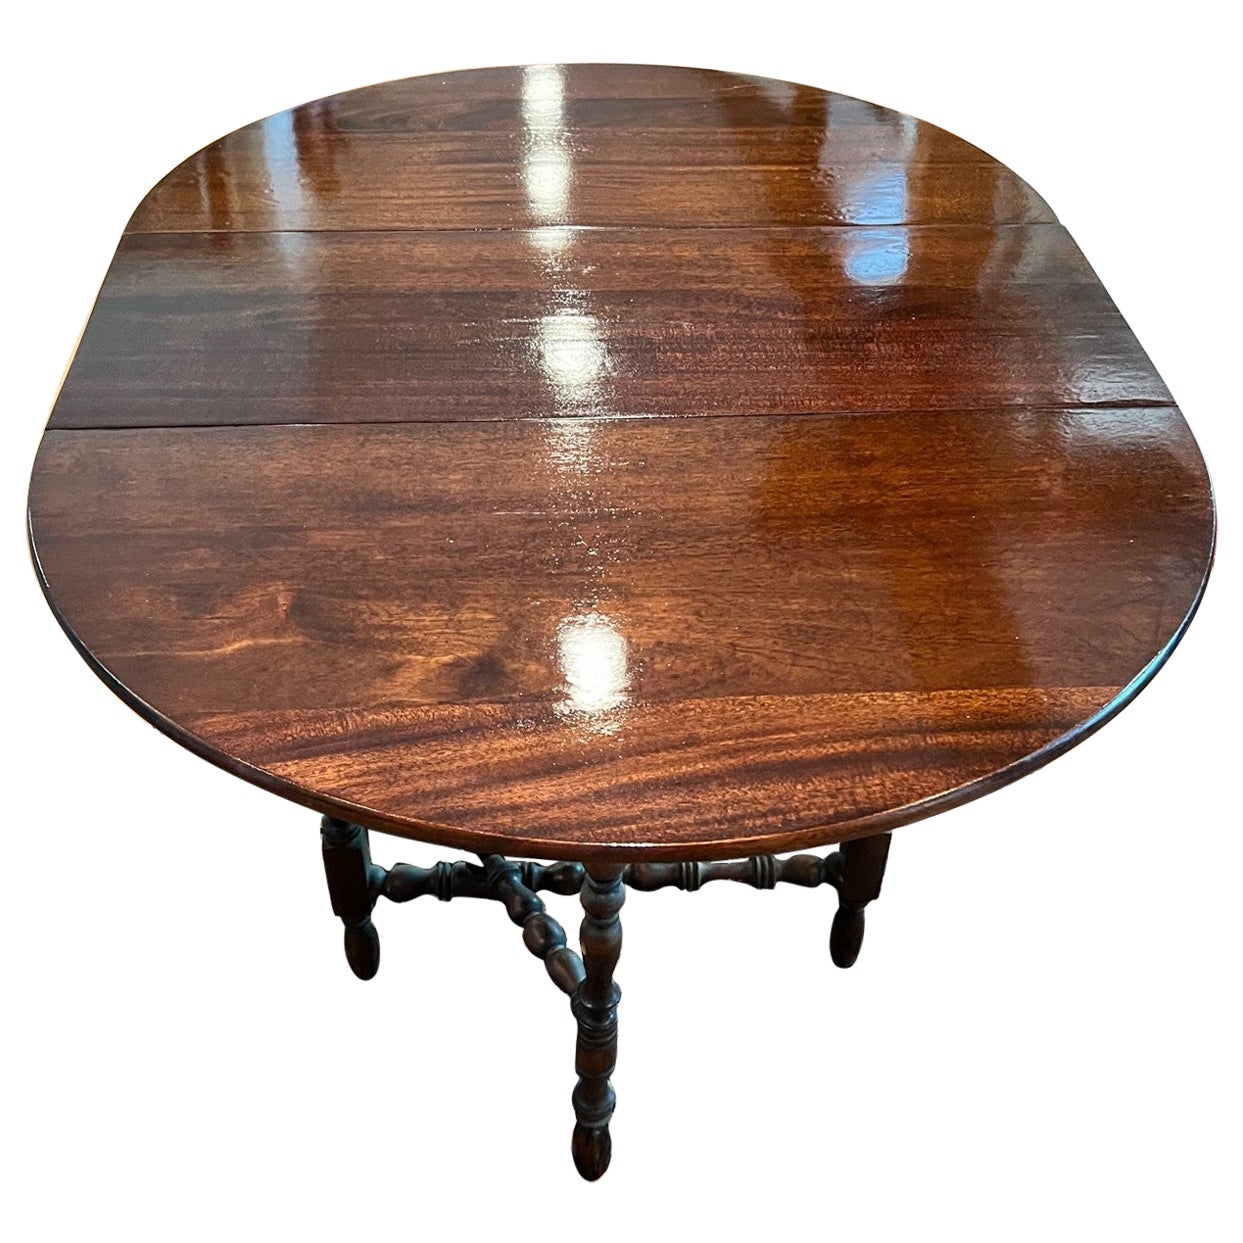 Ovaler viktorianischer Sunderland-/Folding-Tisch aus Mahagoni mit gedrechselten Beinen